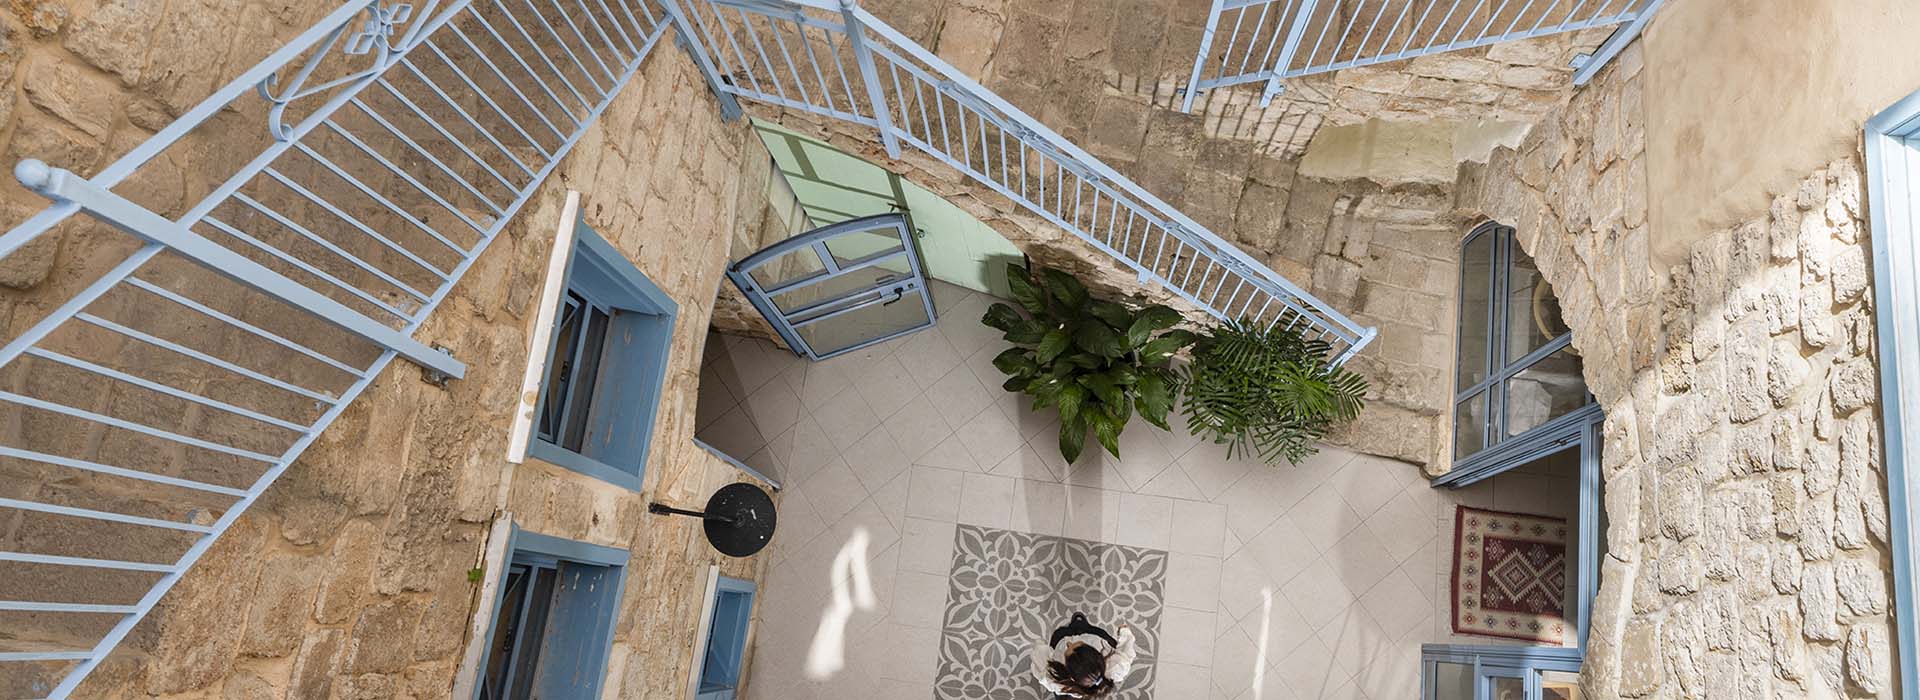 מלון ערבסק - מדרגות במלון